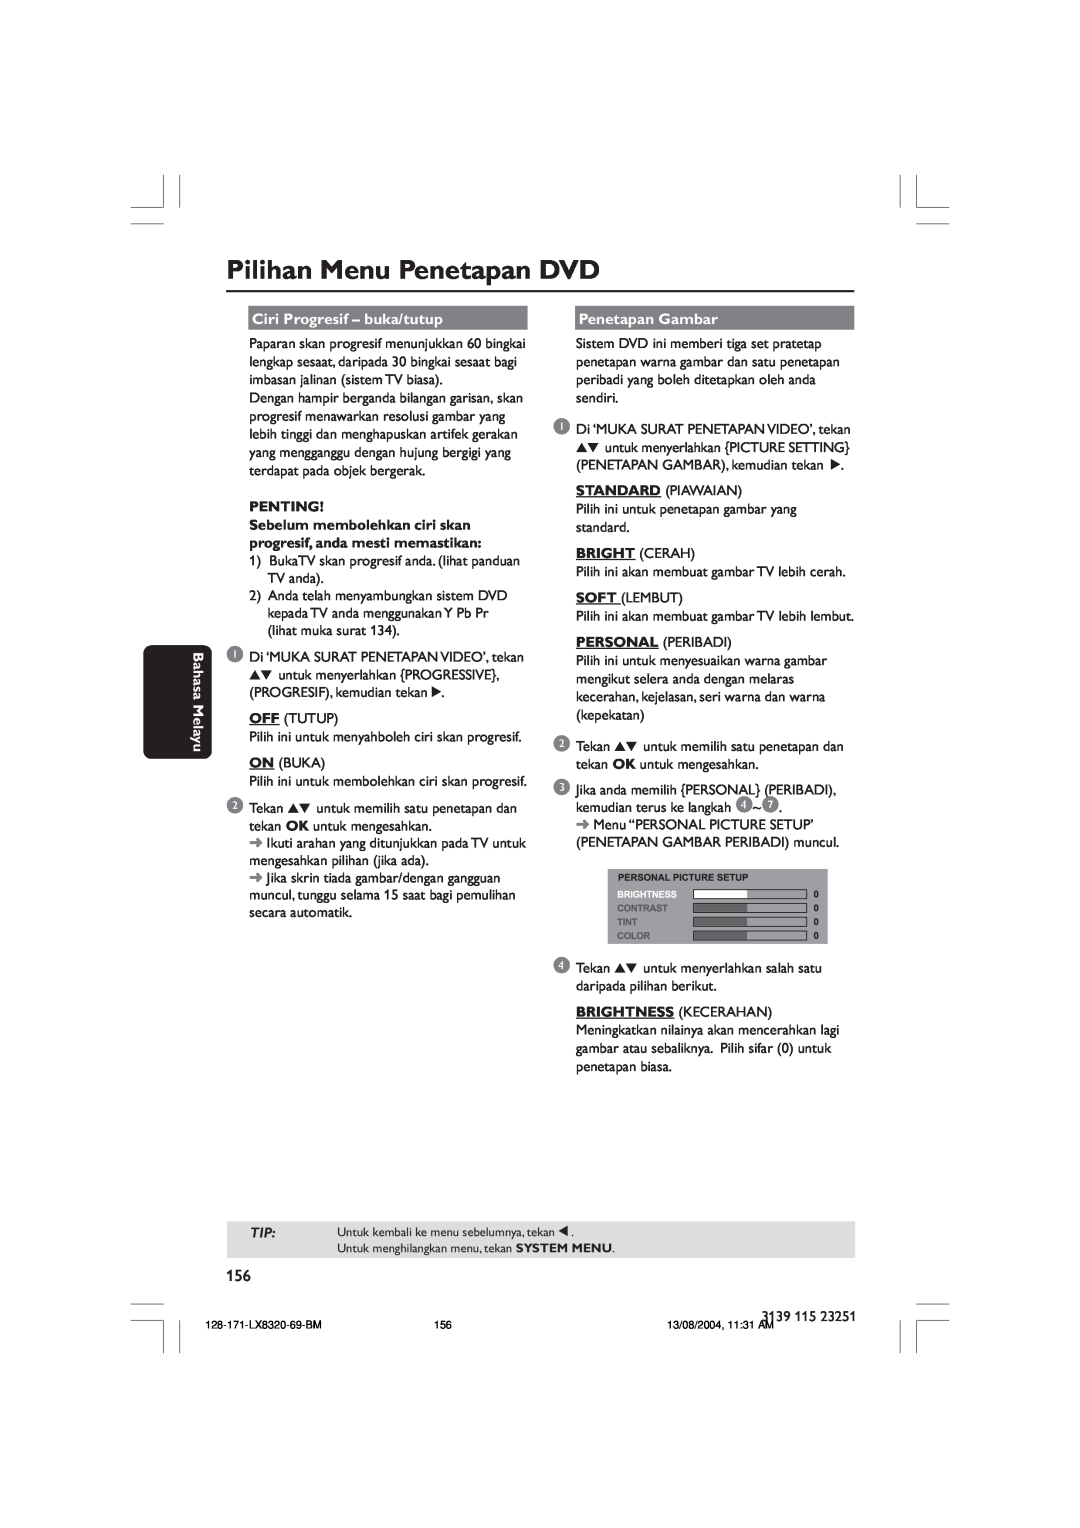 Philips LX8320SA Pilihan Menu Penetapan DVD, Bahasa Melayu, Ciri Progresif - buka/tutup, Penting, Penetapan Gambar 